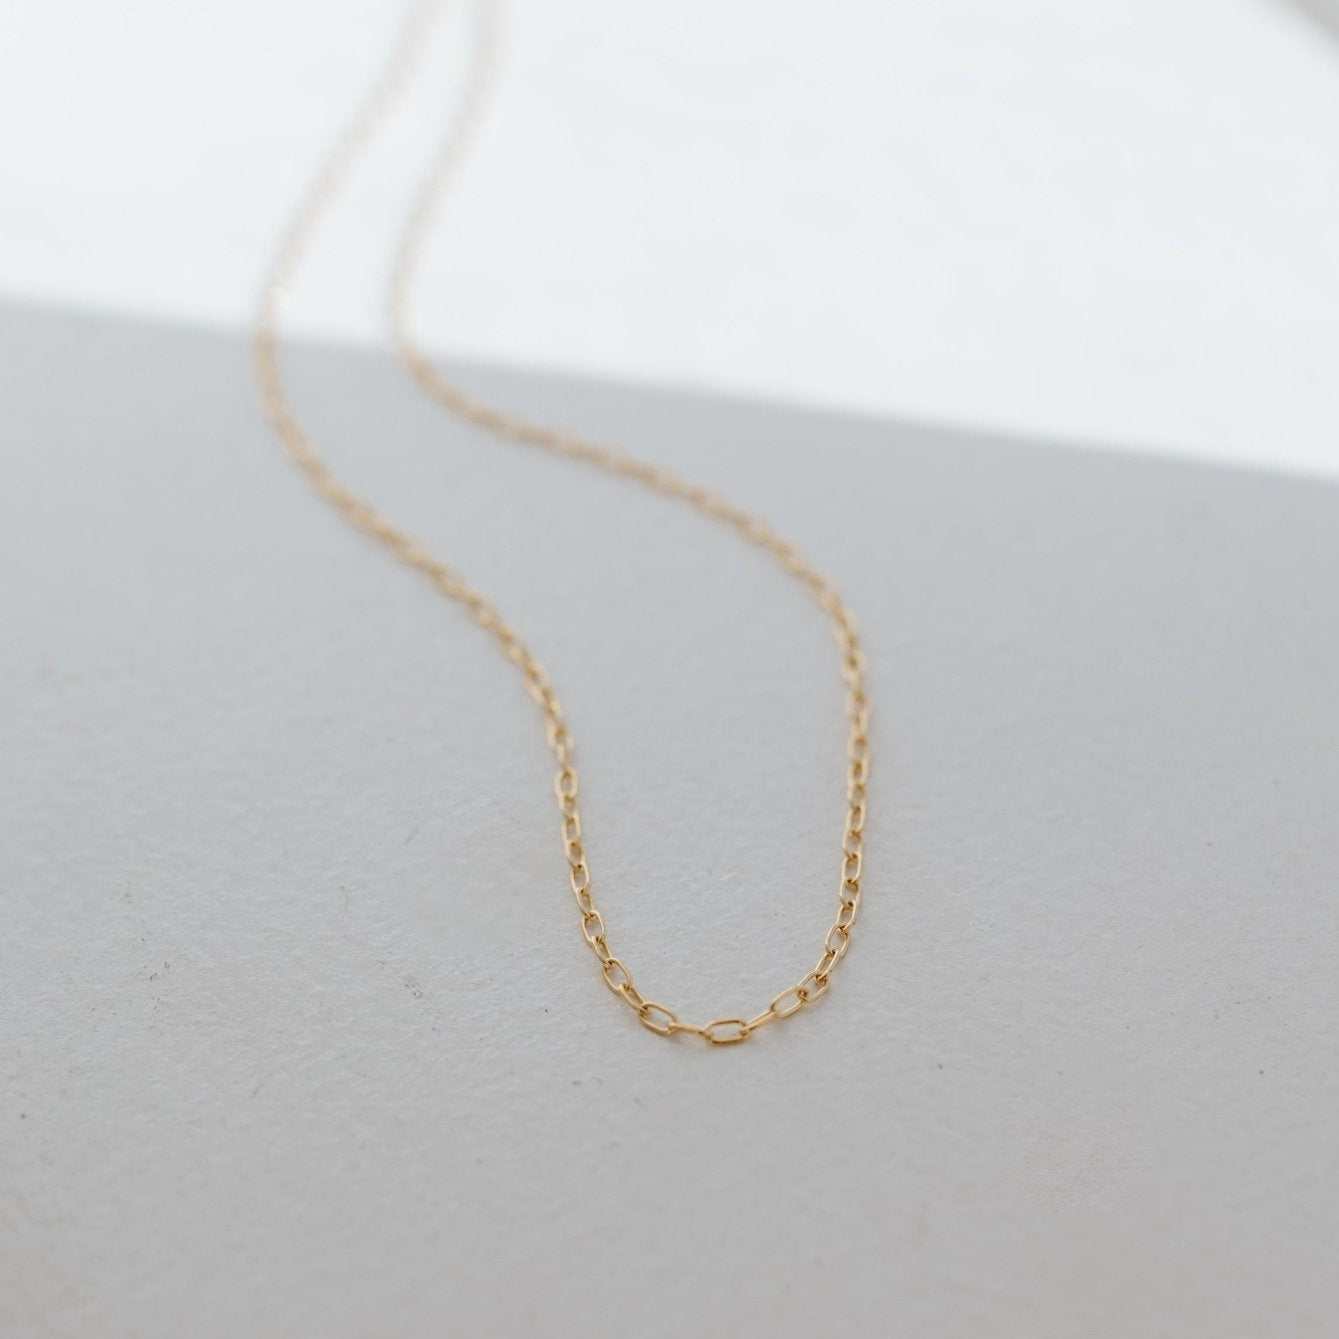 Kinsale Necklace - Jillian Leigh Jewellery - necklaces